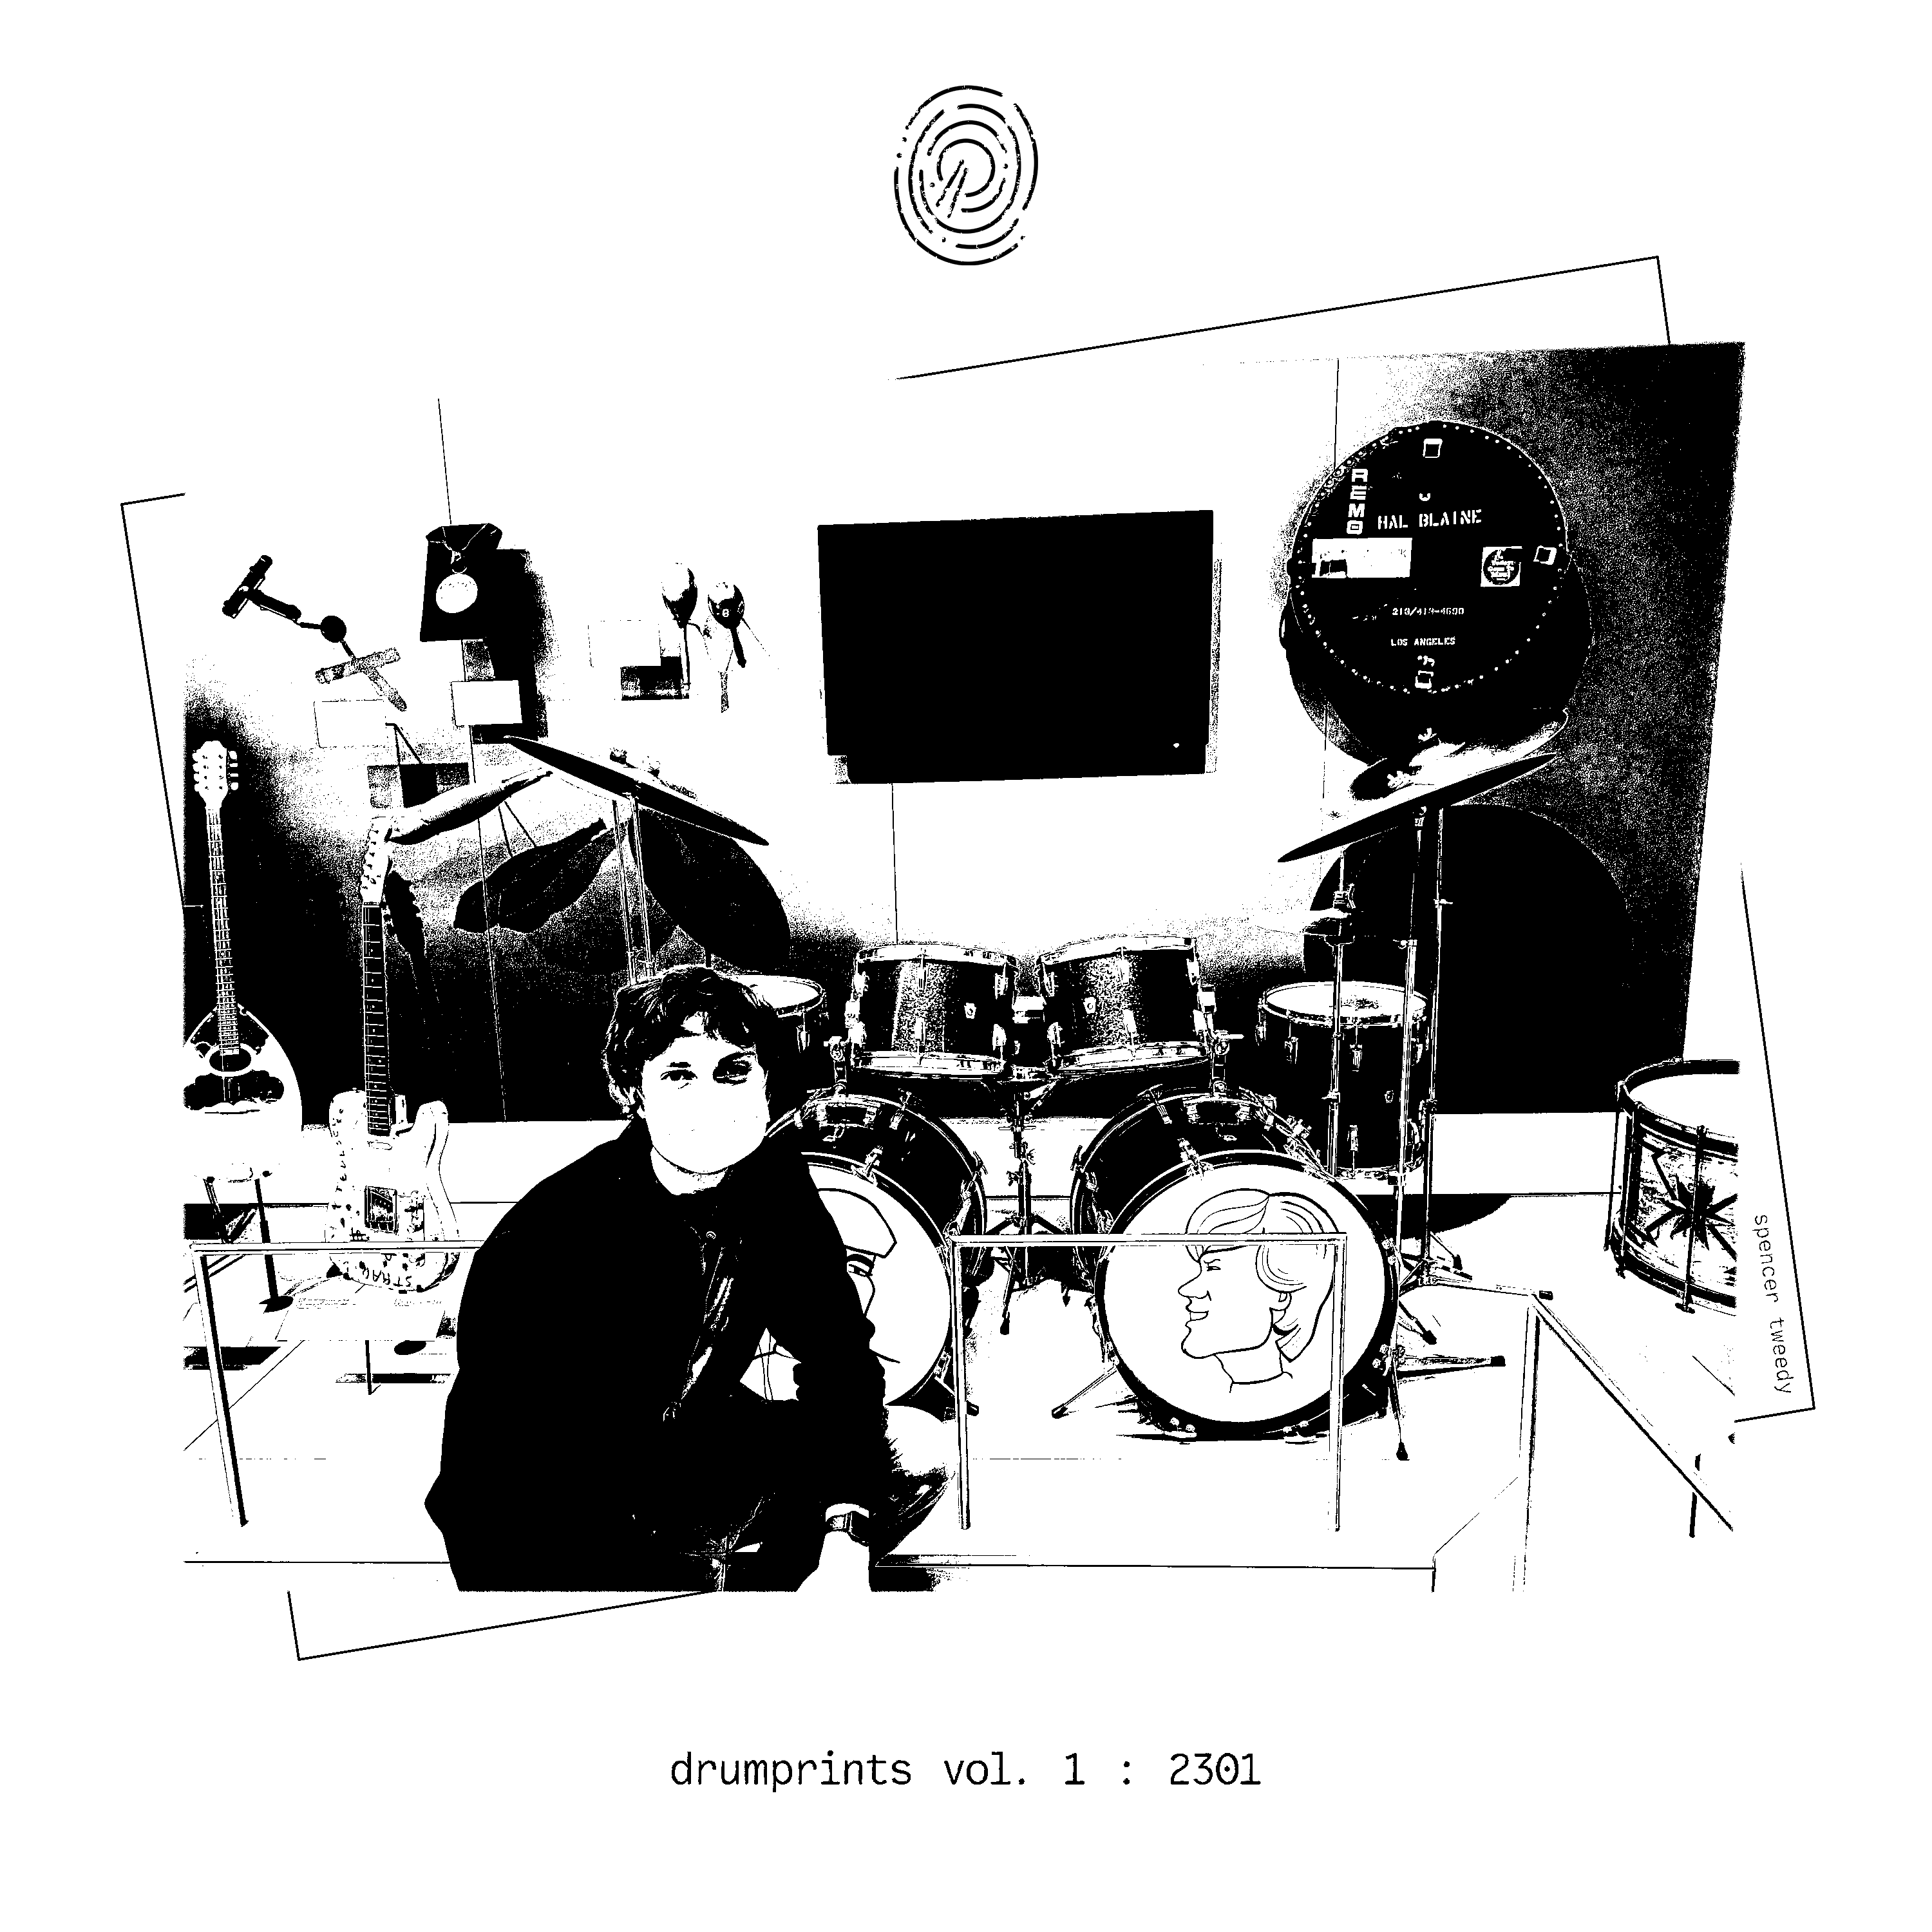 drumprints vol. 1: 2301 artwork